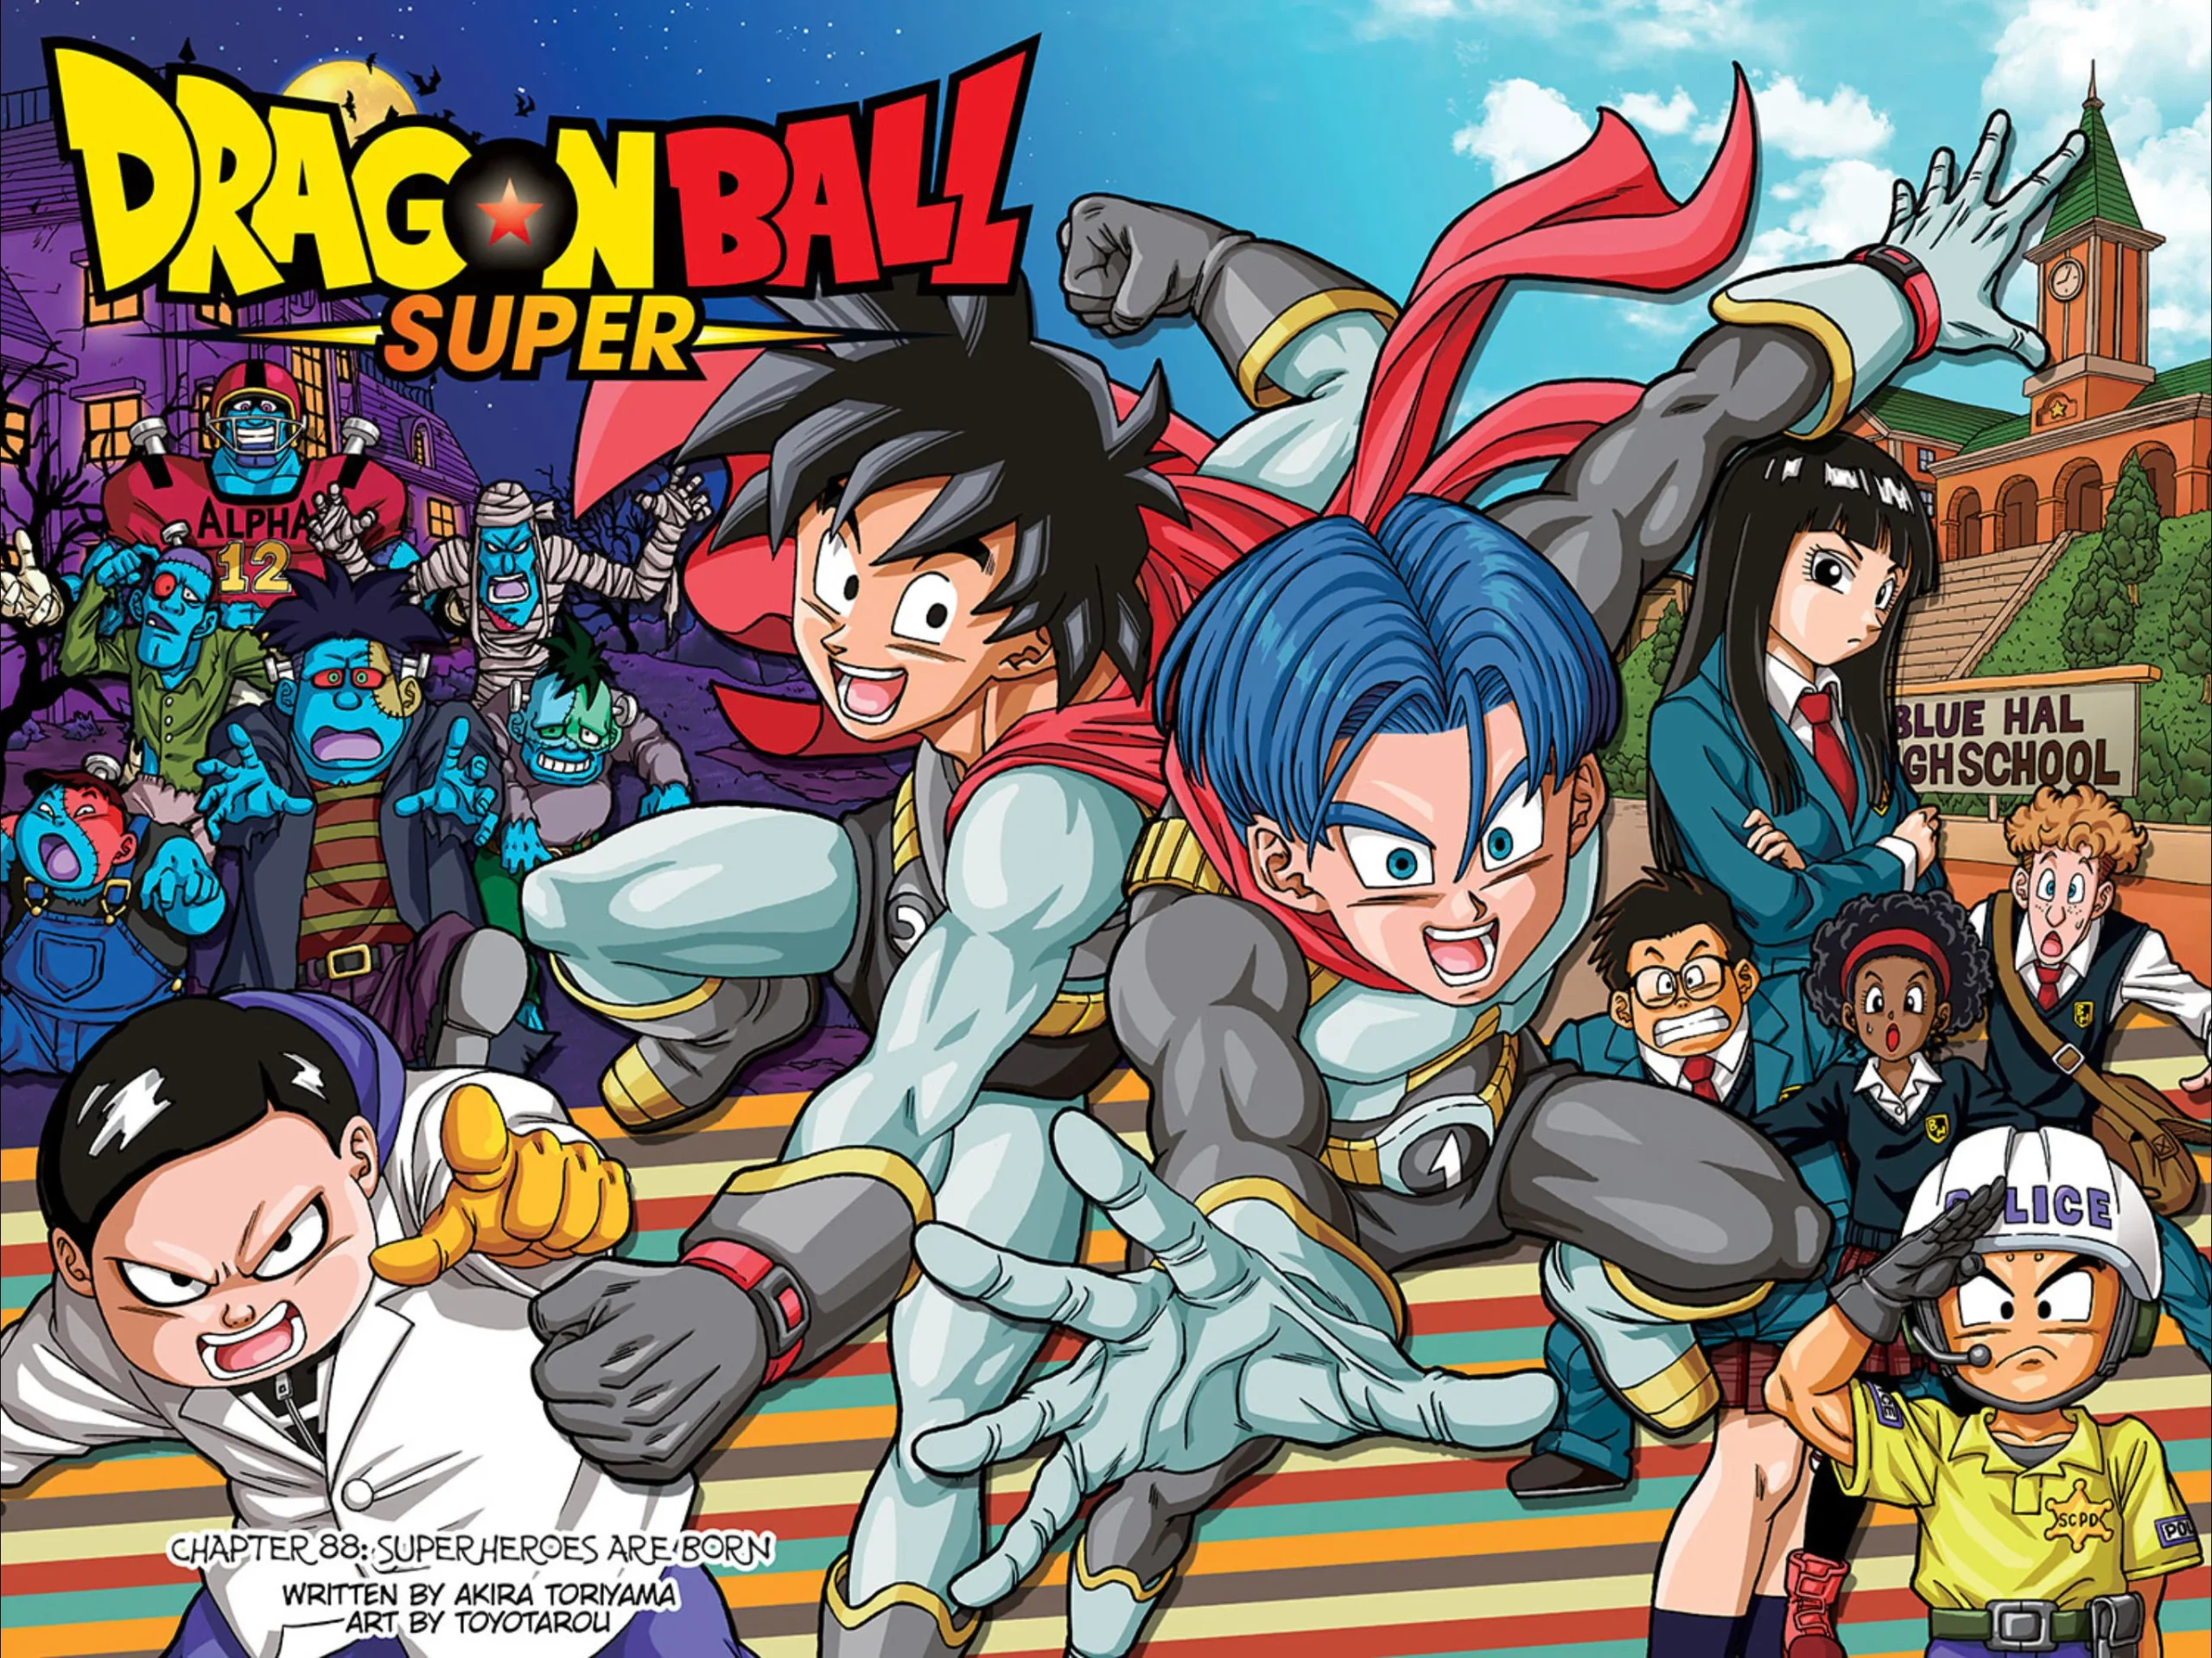 Divulgadas novas imagens da nova edição do mangá em cores de Dragon Ball -  Crunchyroll Notícias